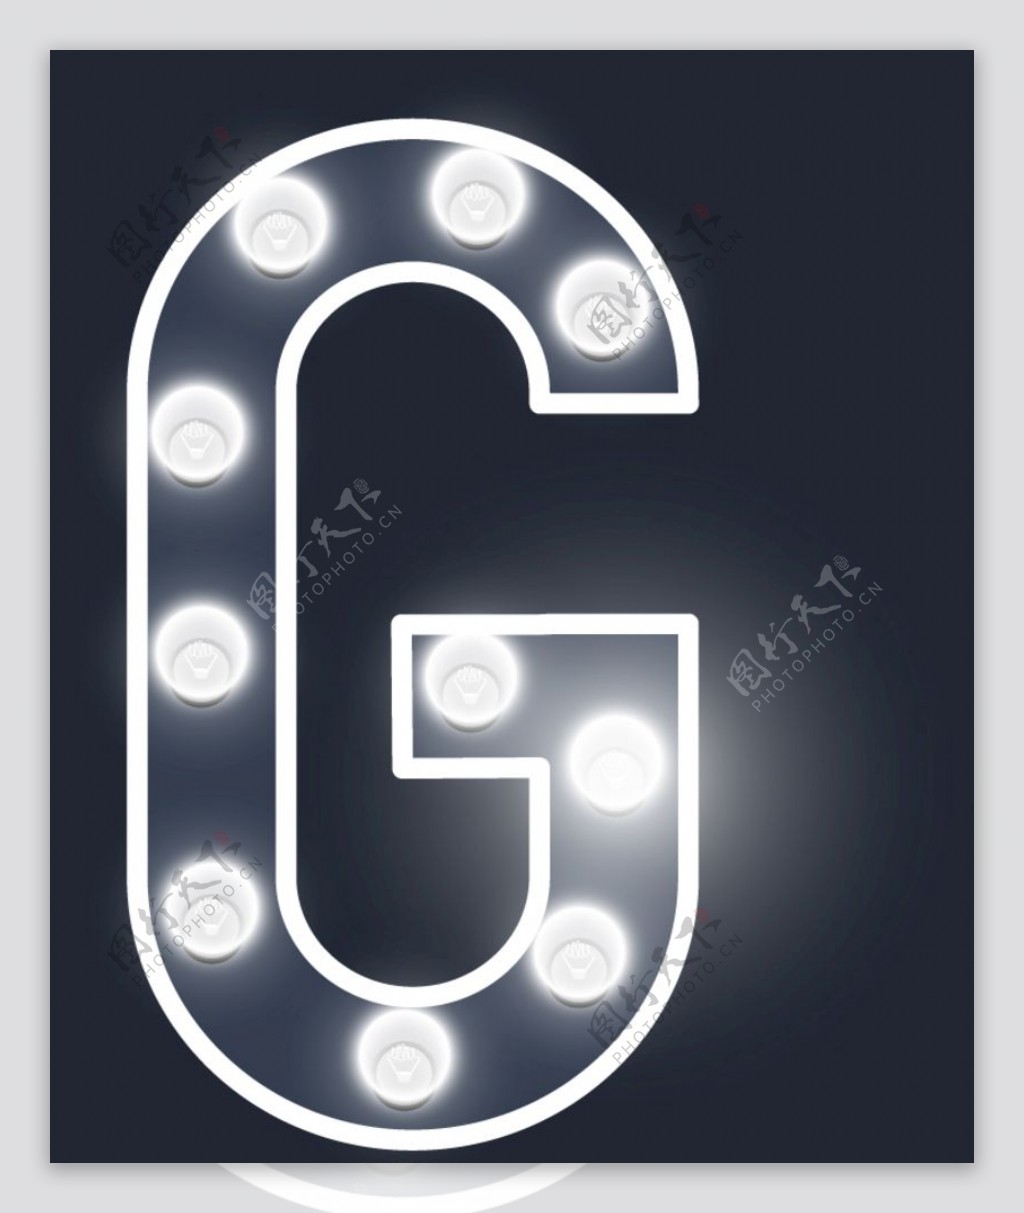 字母G图片